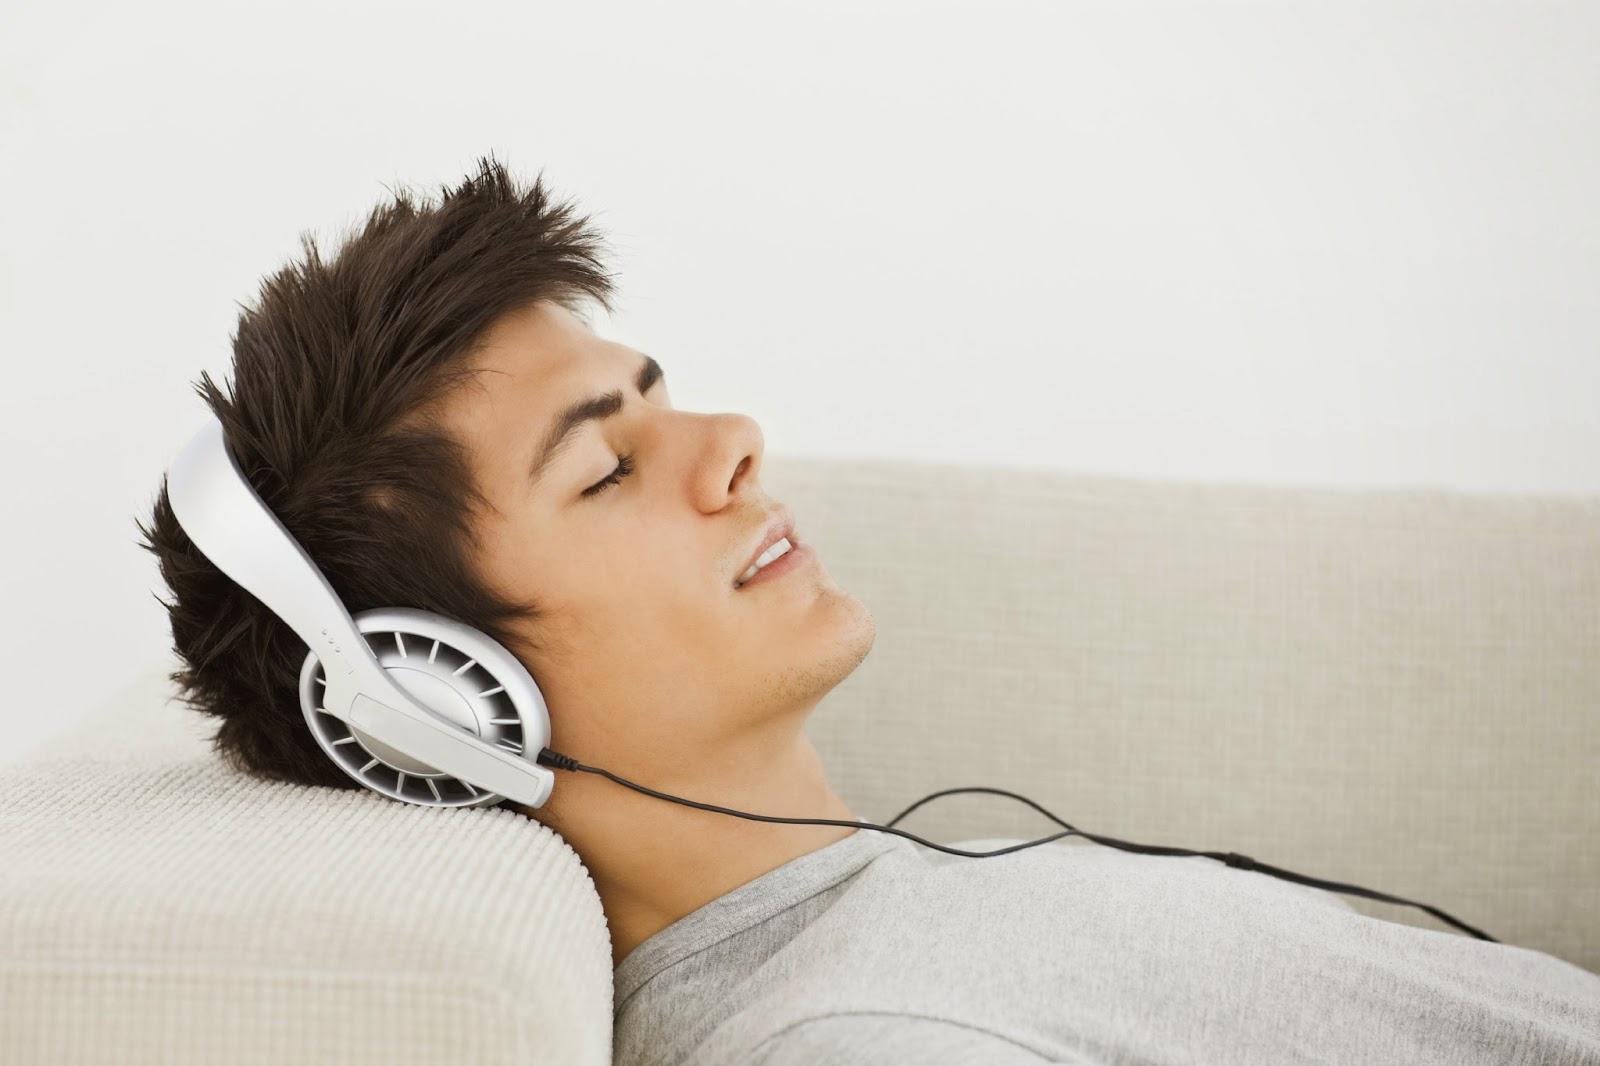 Слушать музыку ал. Человек слушает музыку. Релакс в наушниках. Релакс от музыки. Пение и стресс.